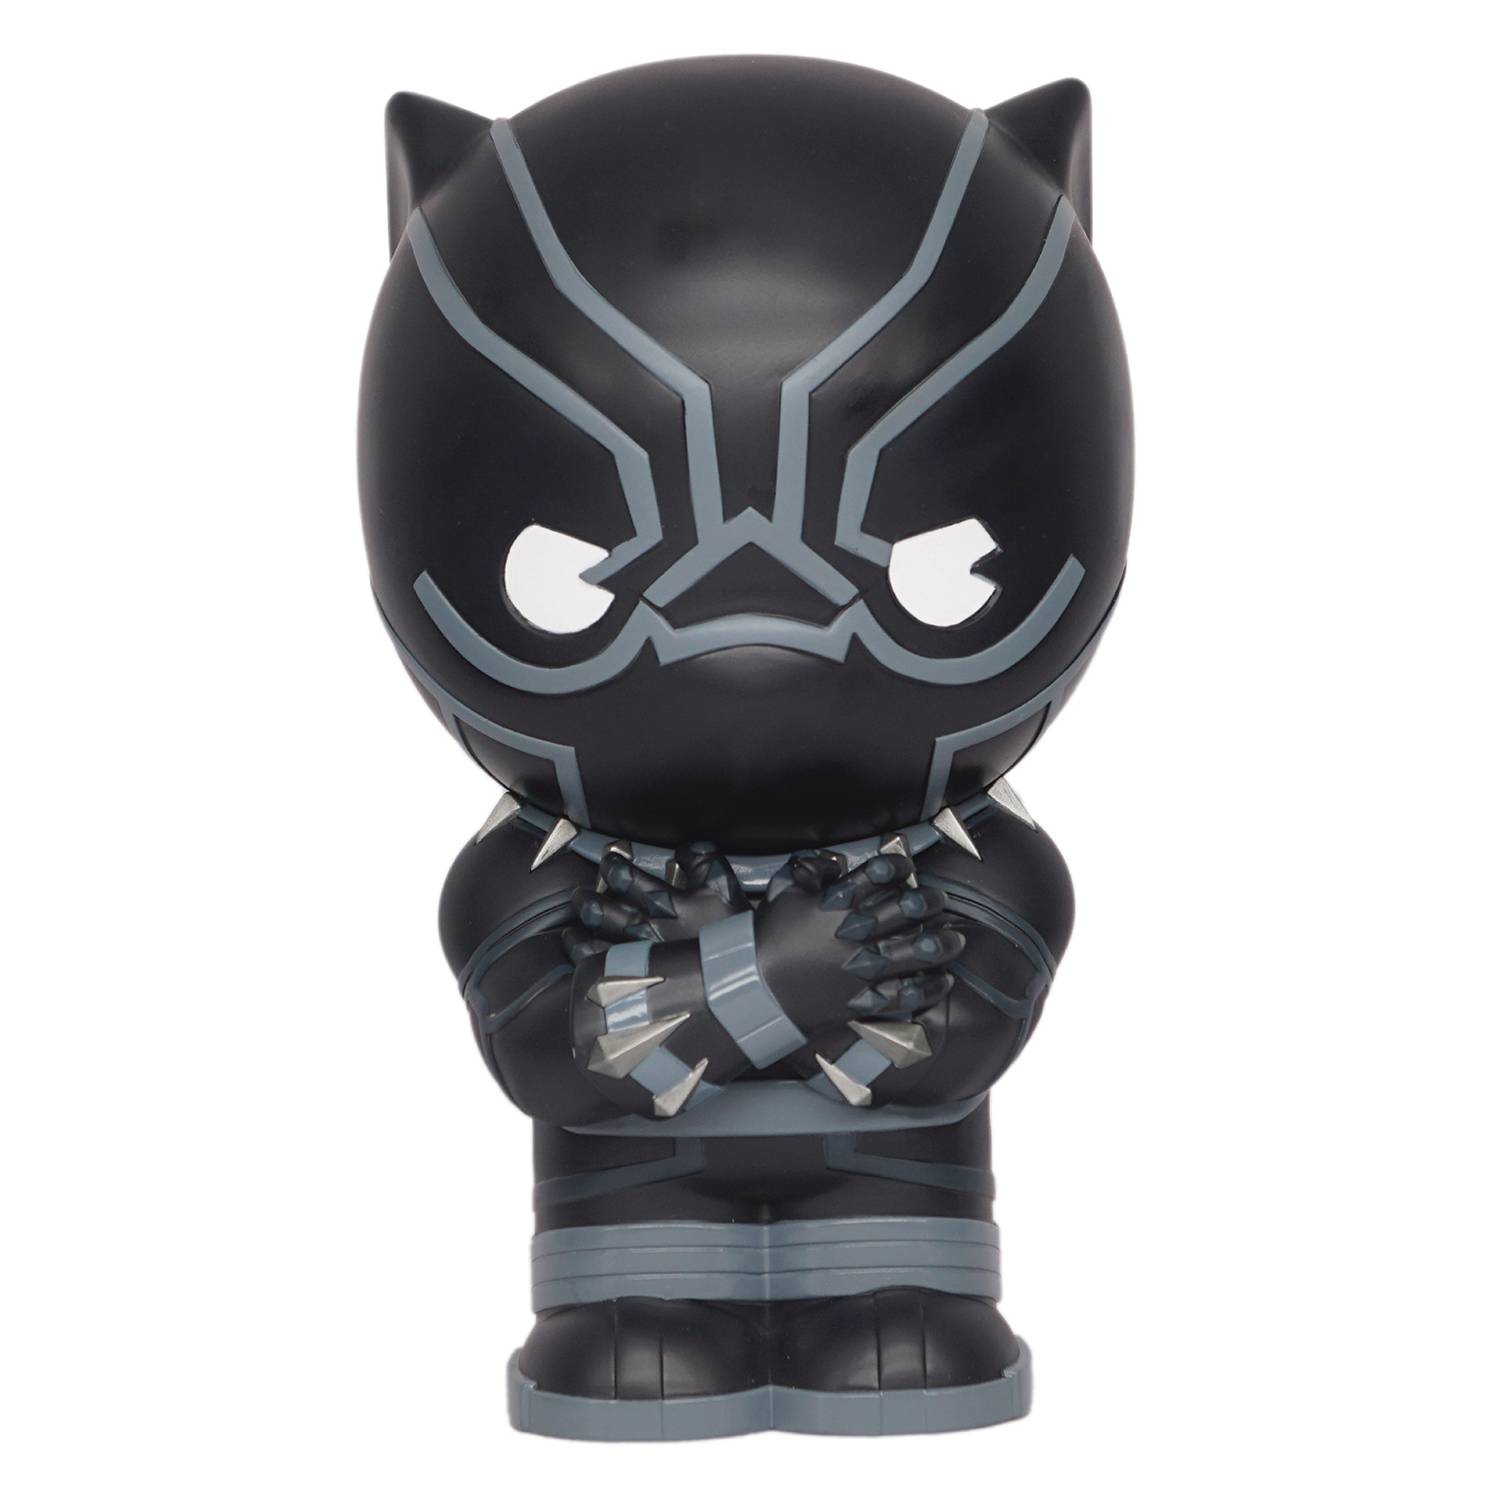 Marvel Heroes Black Panther Figural Bank